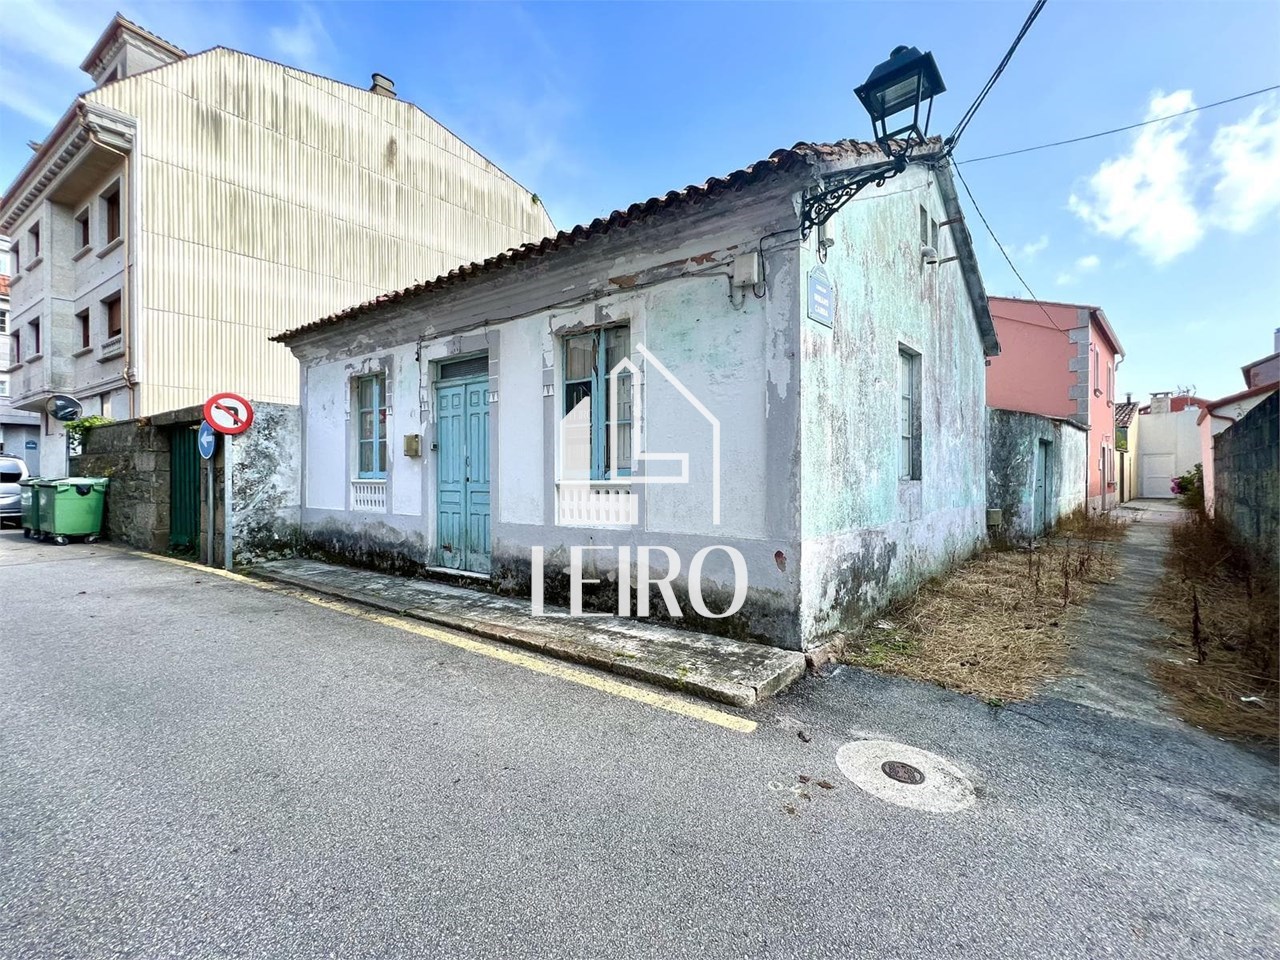 Foto 2 Casa a Rehabilitar con Terreno Anexo Urbanizable en el Centro de Vilanova